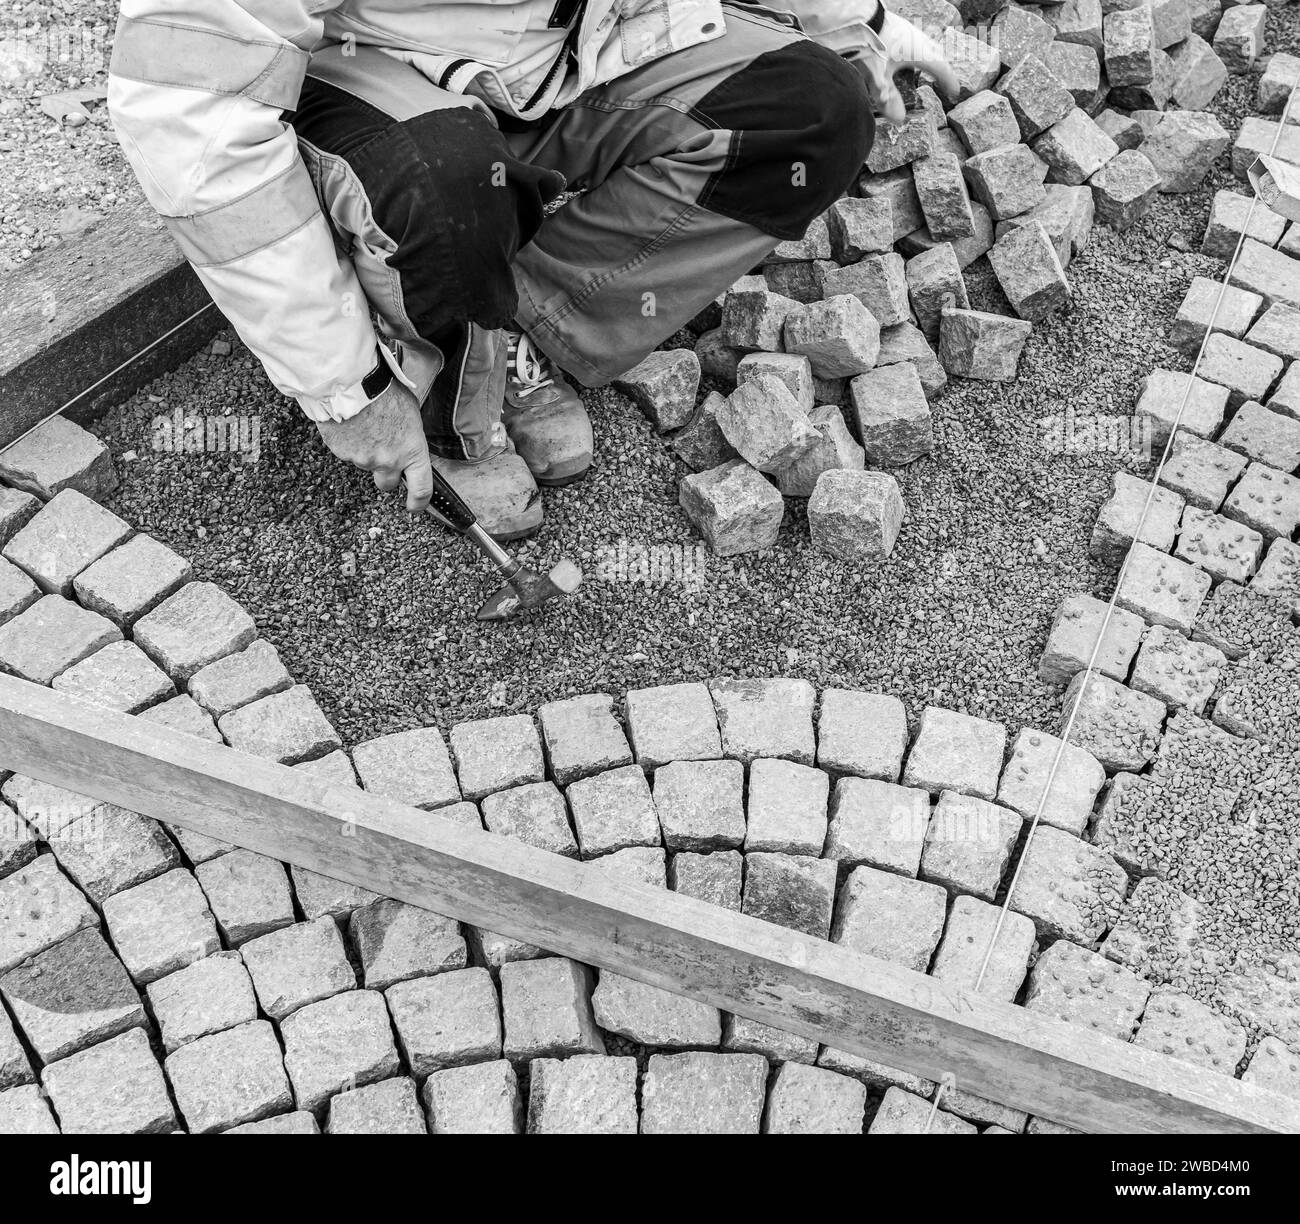 Ripavimentazione del fondo stradale, posa manuale di cubi di porfido sulla strada. Pavimentazione realizzata con cubi di Porfido rosso Trentino, Trentino alto Adige, Italia Foto Stock